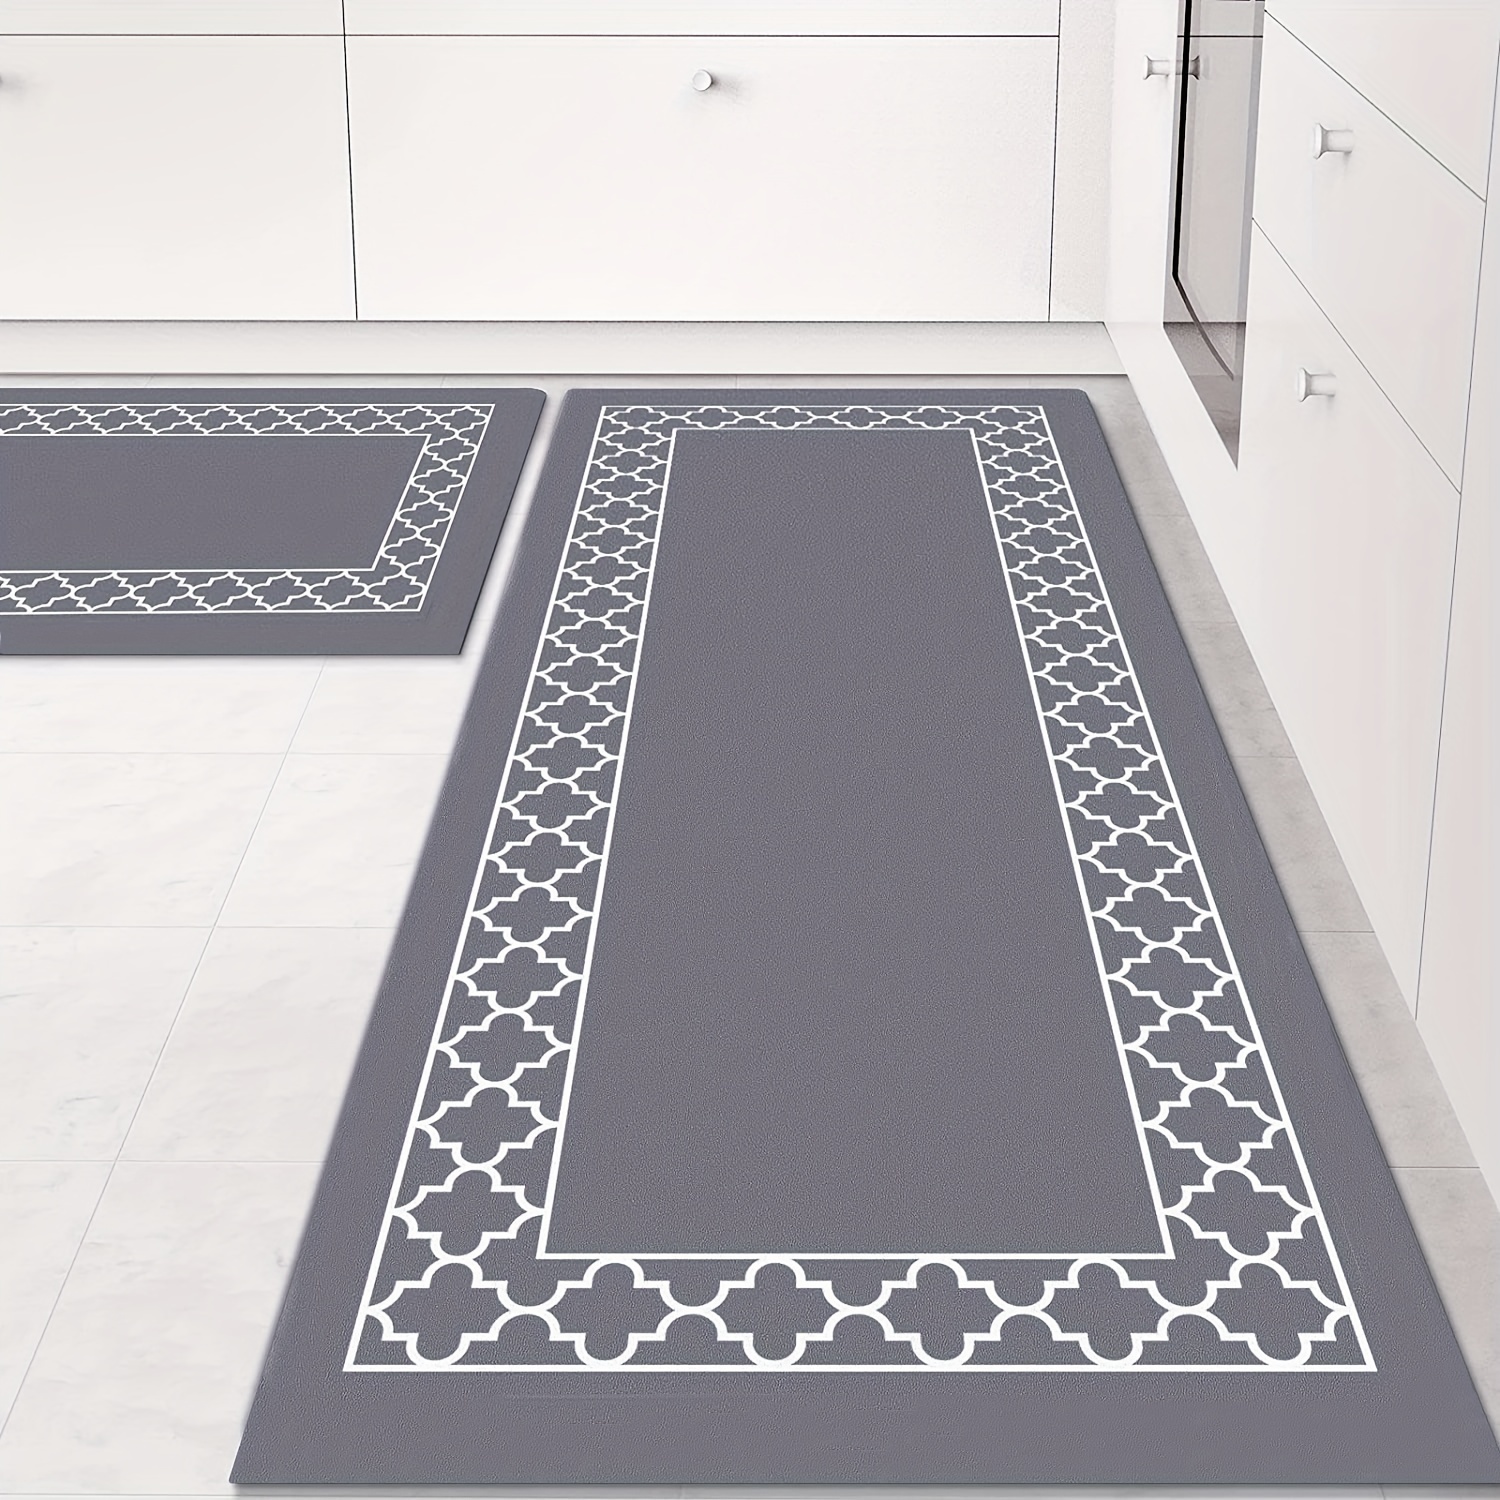 oil long 2pcs/set for kitchen mat rug floor carpet absorbent